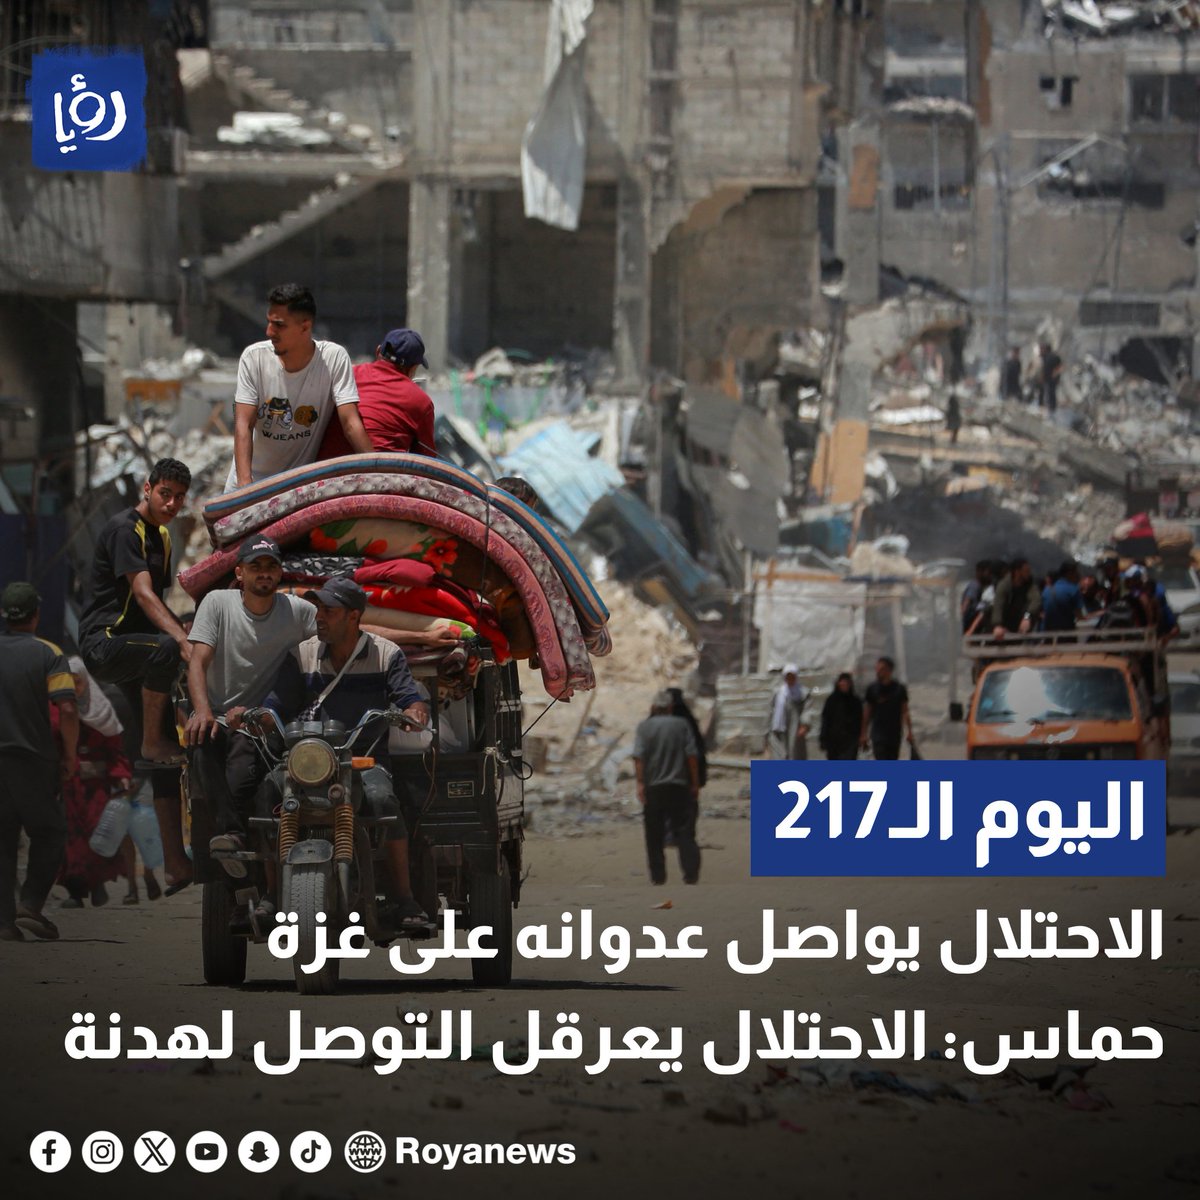 #عاجل| 217 يومًا من العدوان على غزة.. حماس: الاحتلال يعرقل التوصل لهدنة royanews.tv/news/326460 #رؤيا_الإخباري #عدوان_الاحتلال #غزة #رفح #حماس